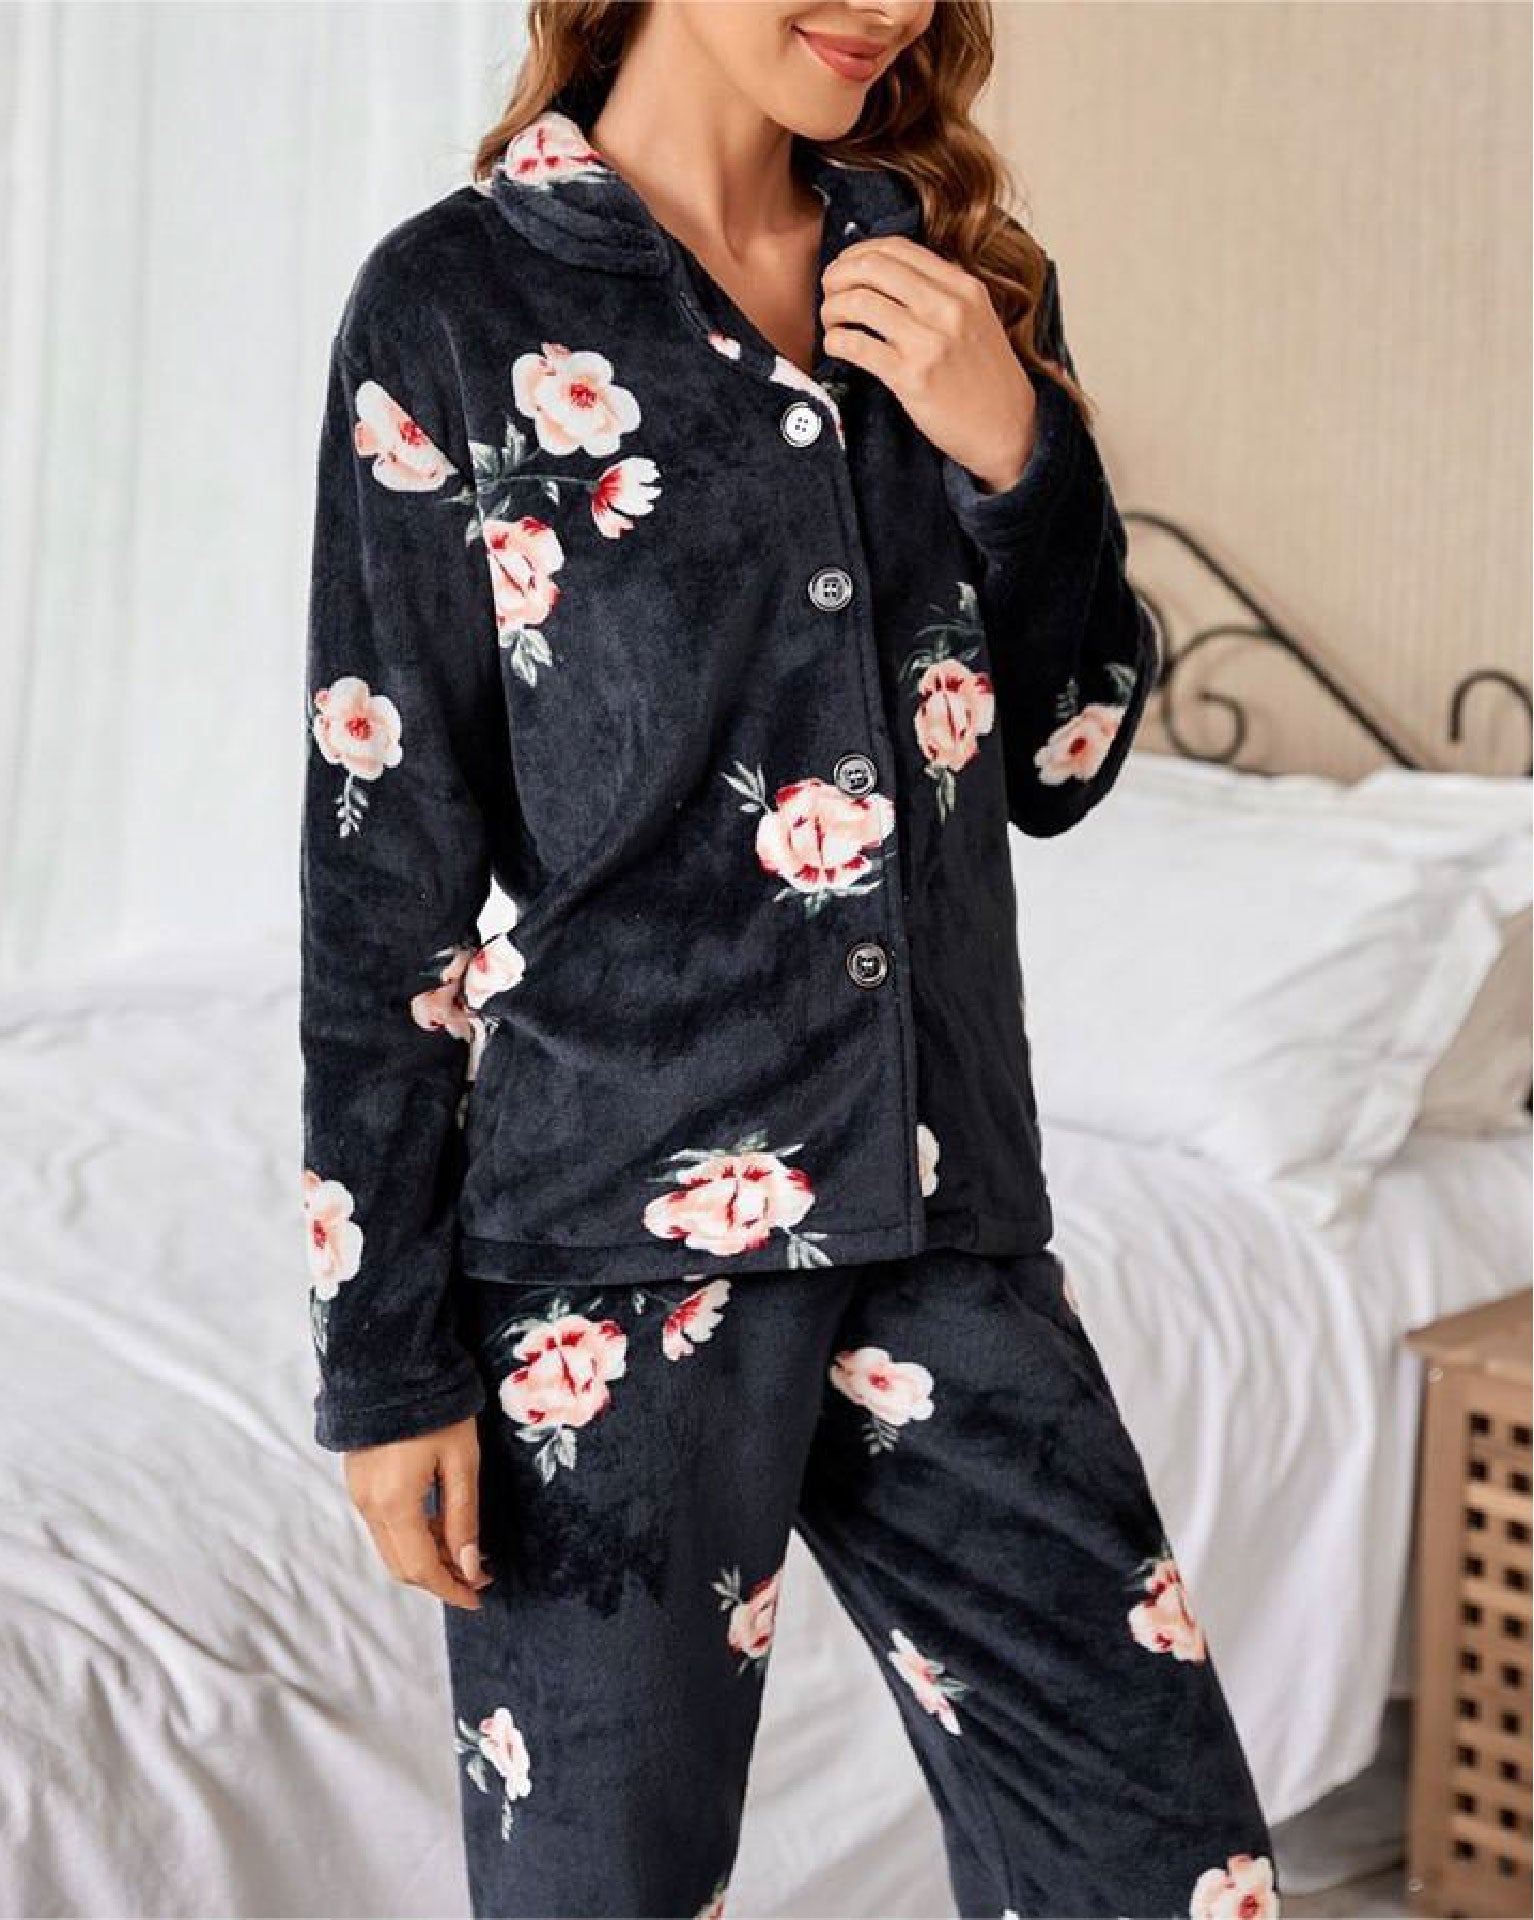 Pajamas - Flowers - Black - 2 pieces